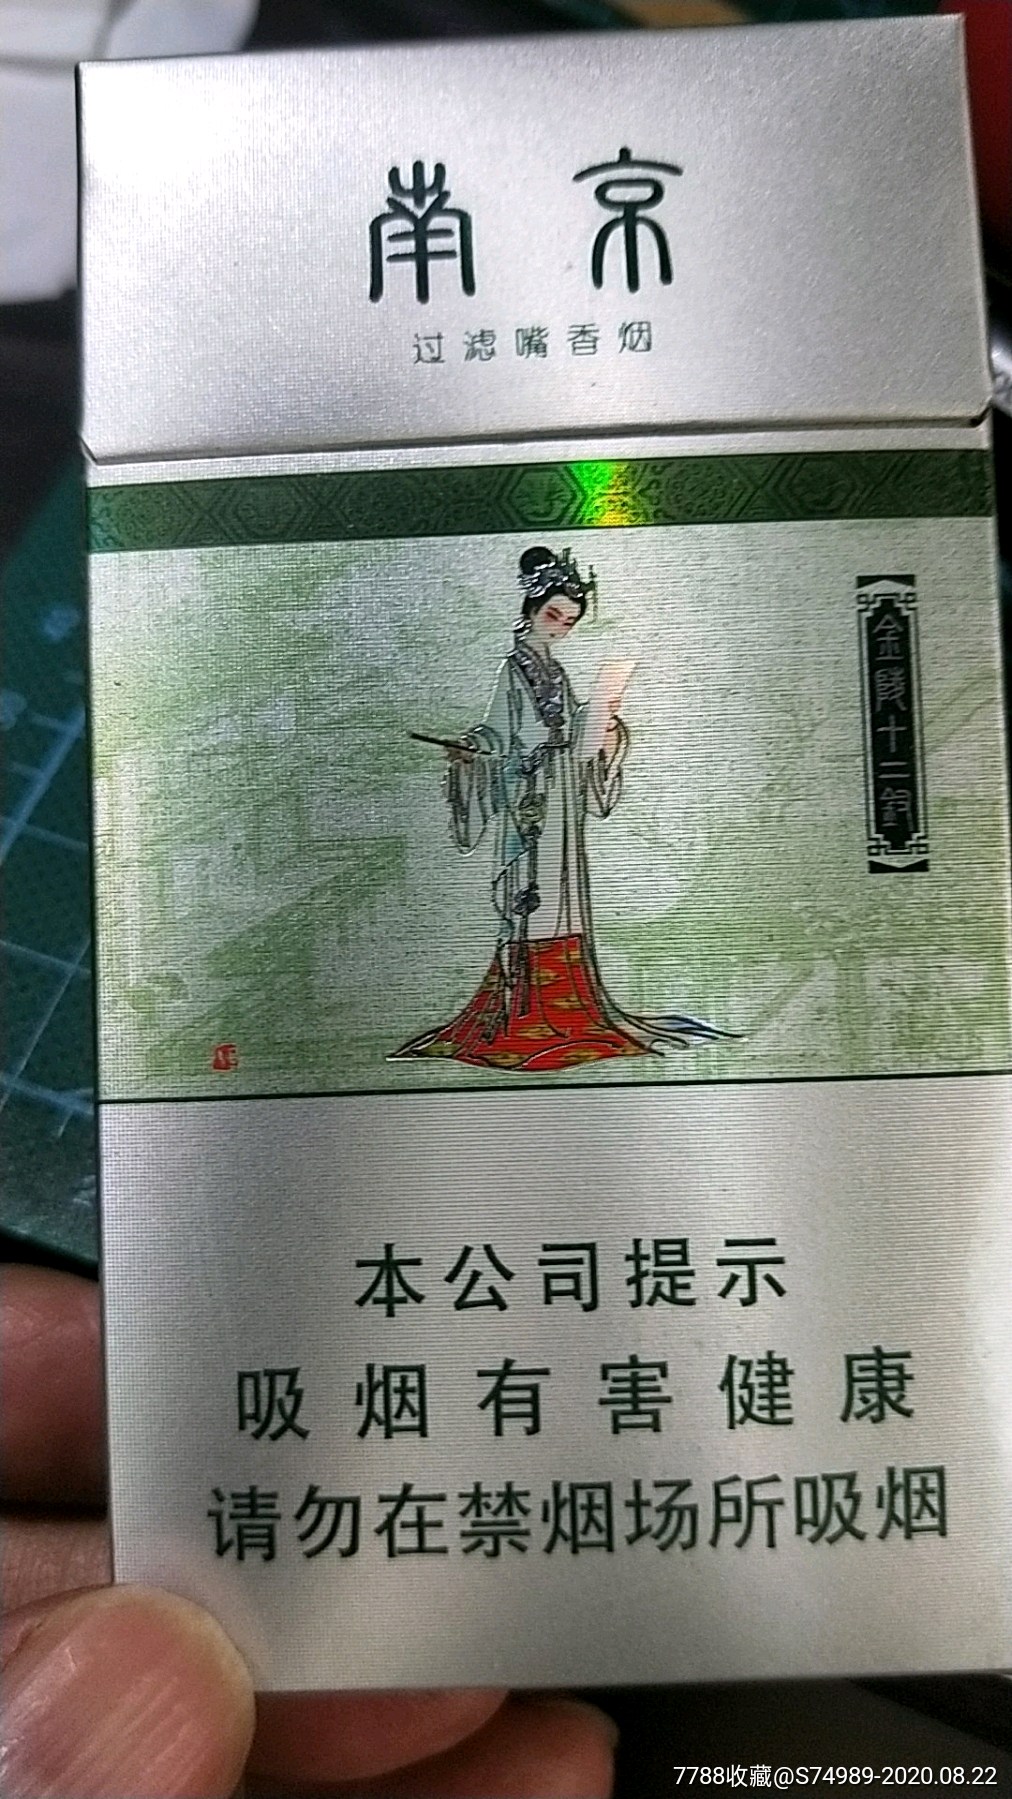 《金陵十二钗》探春结社(尽早版)烟盒烟标